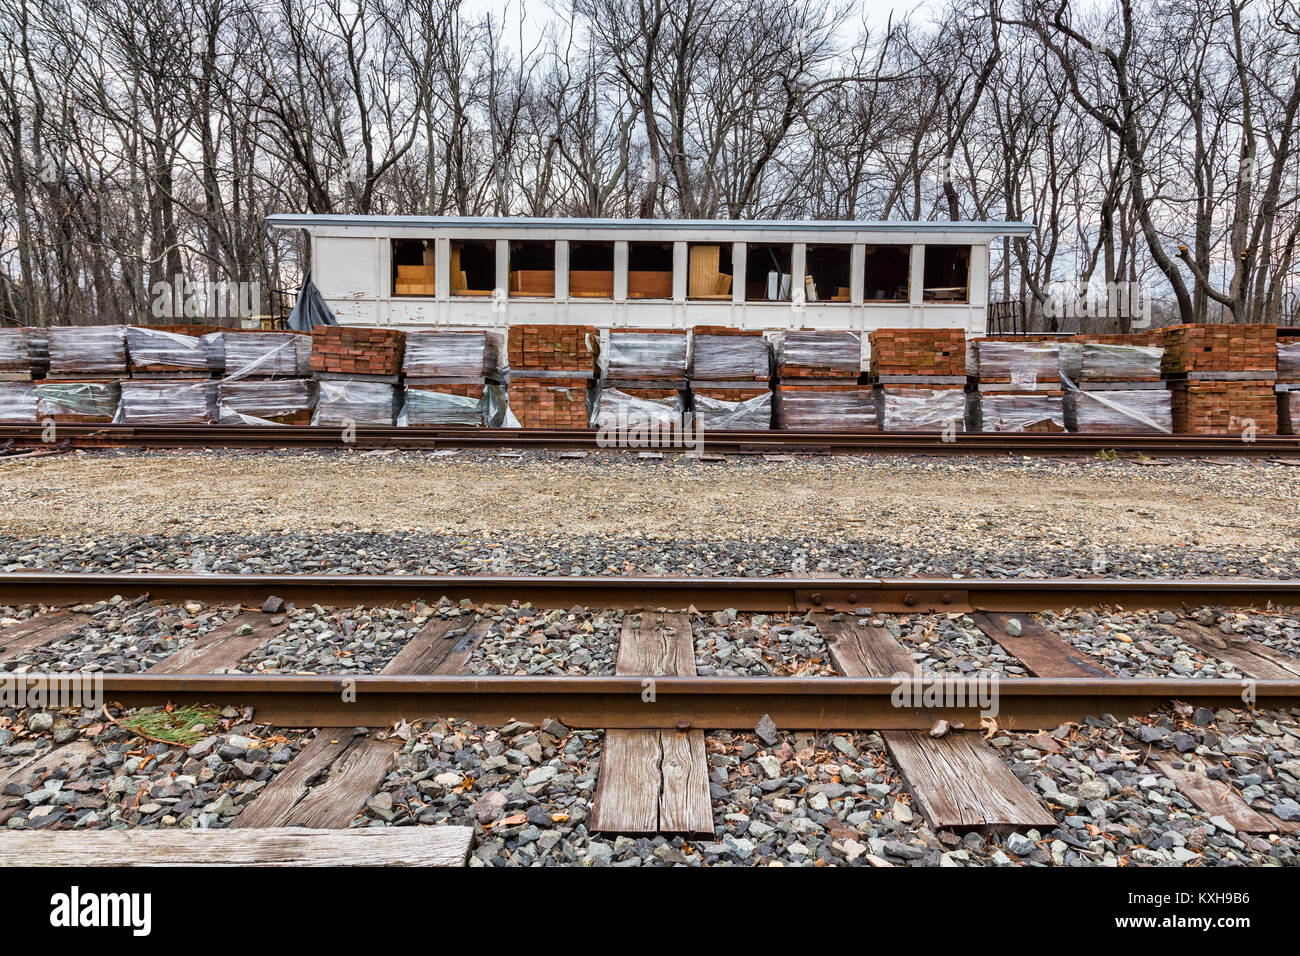 Eine alte historische Bahnhof bei Allaire Dorf in New Jersey, USA. Allaire Dorf war eine alte koloniale bog Bügeleisen Gemeinschaft. Stockfoto